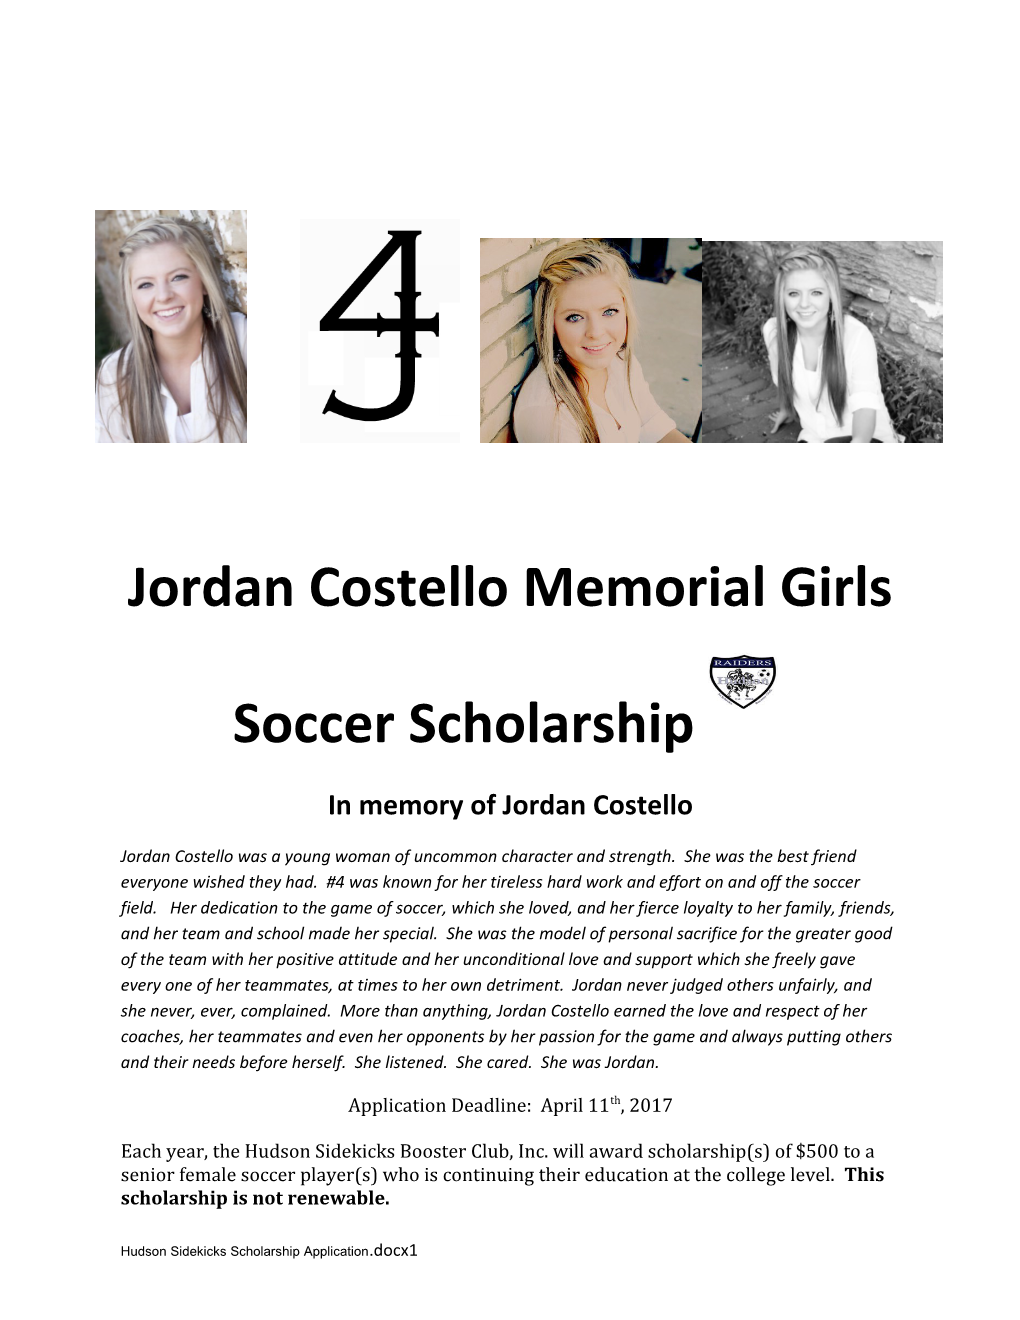 In Memory of Jordan Costello